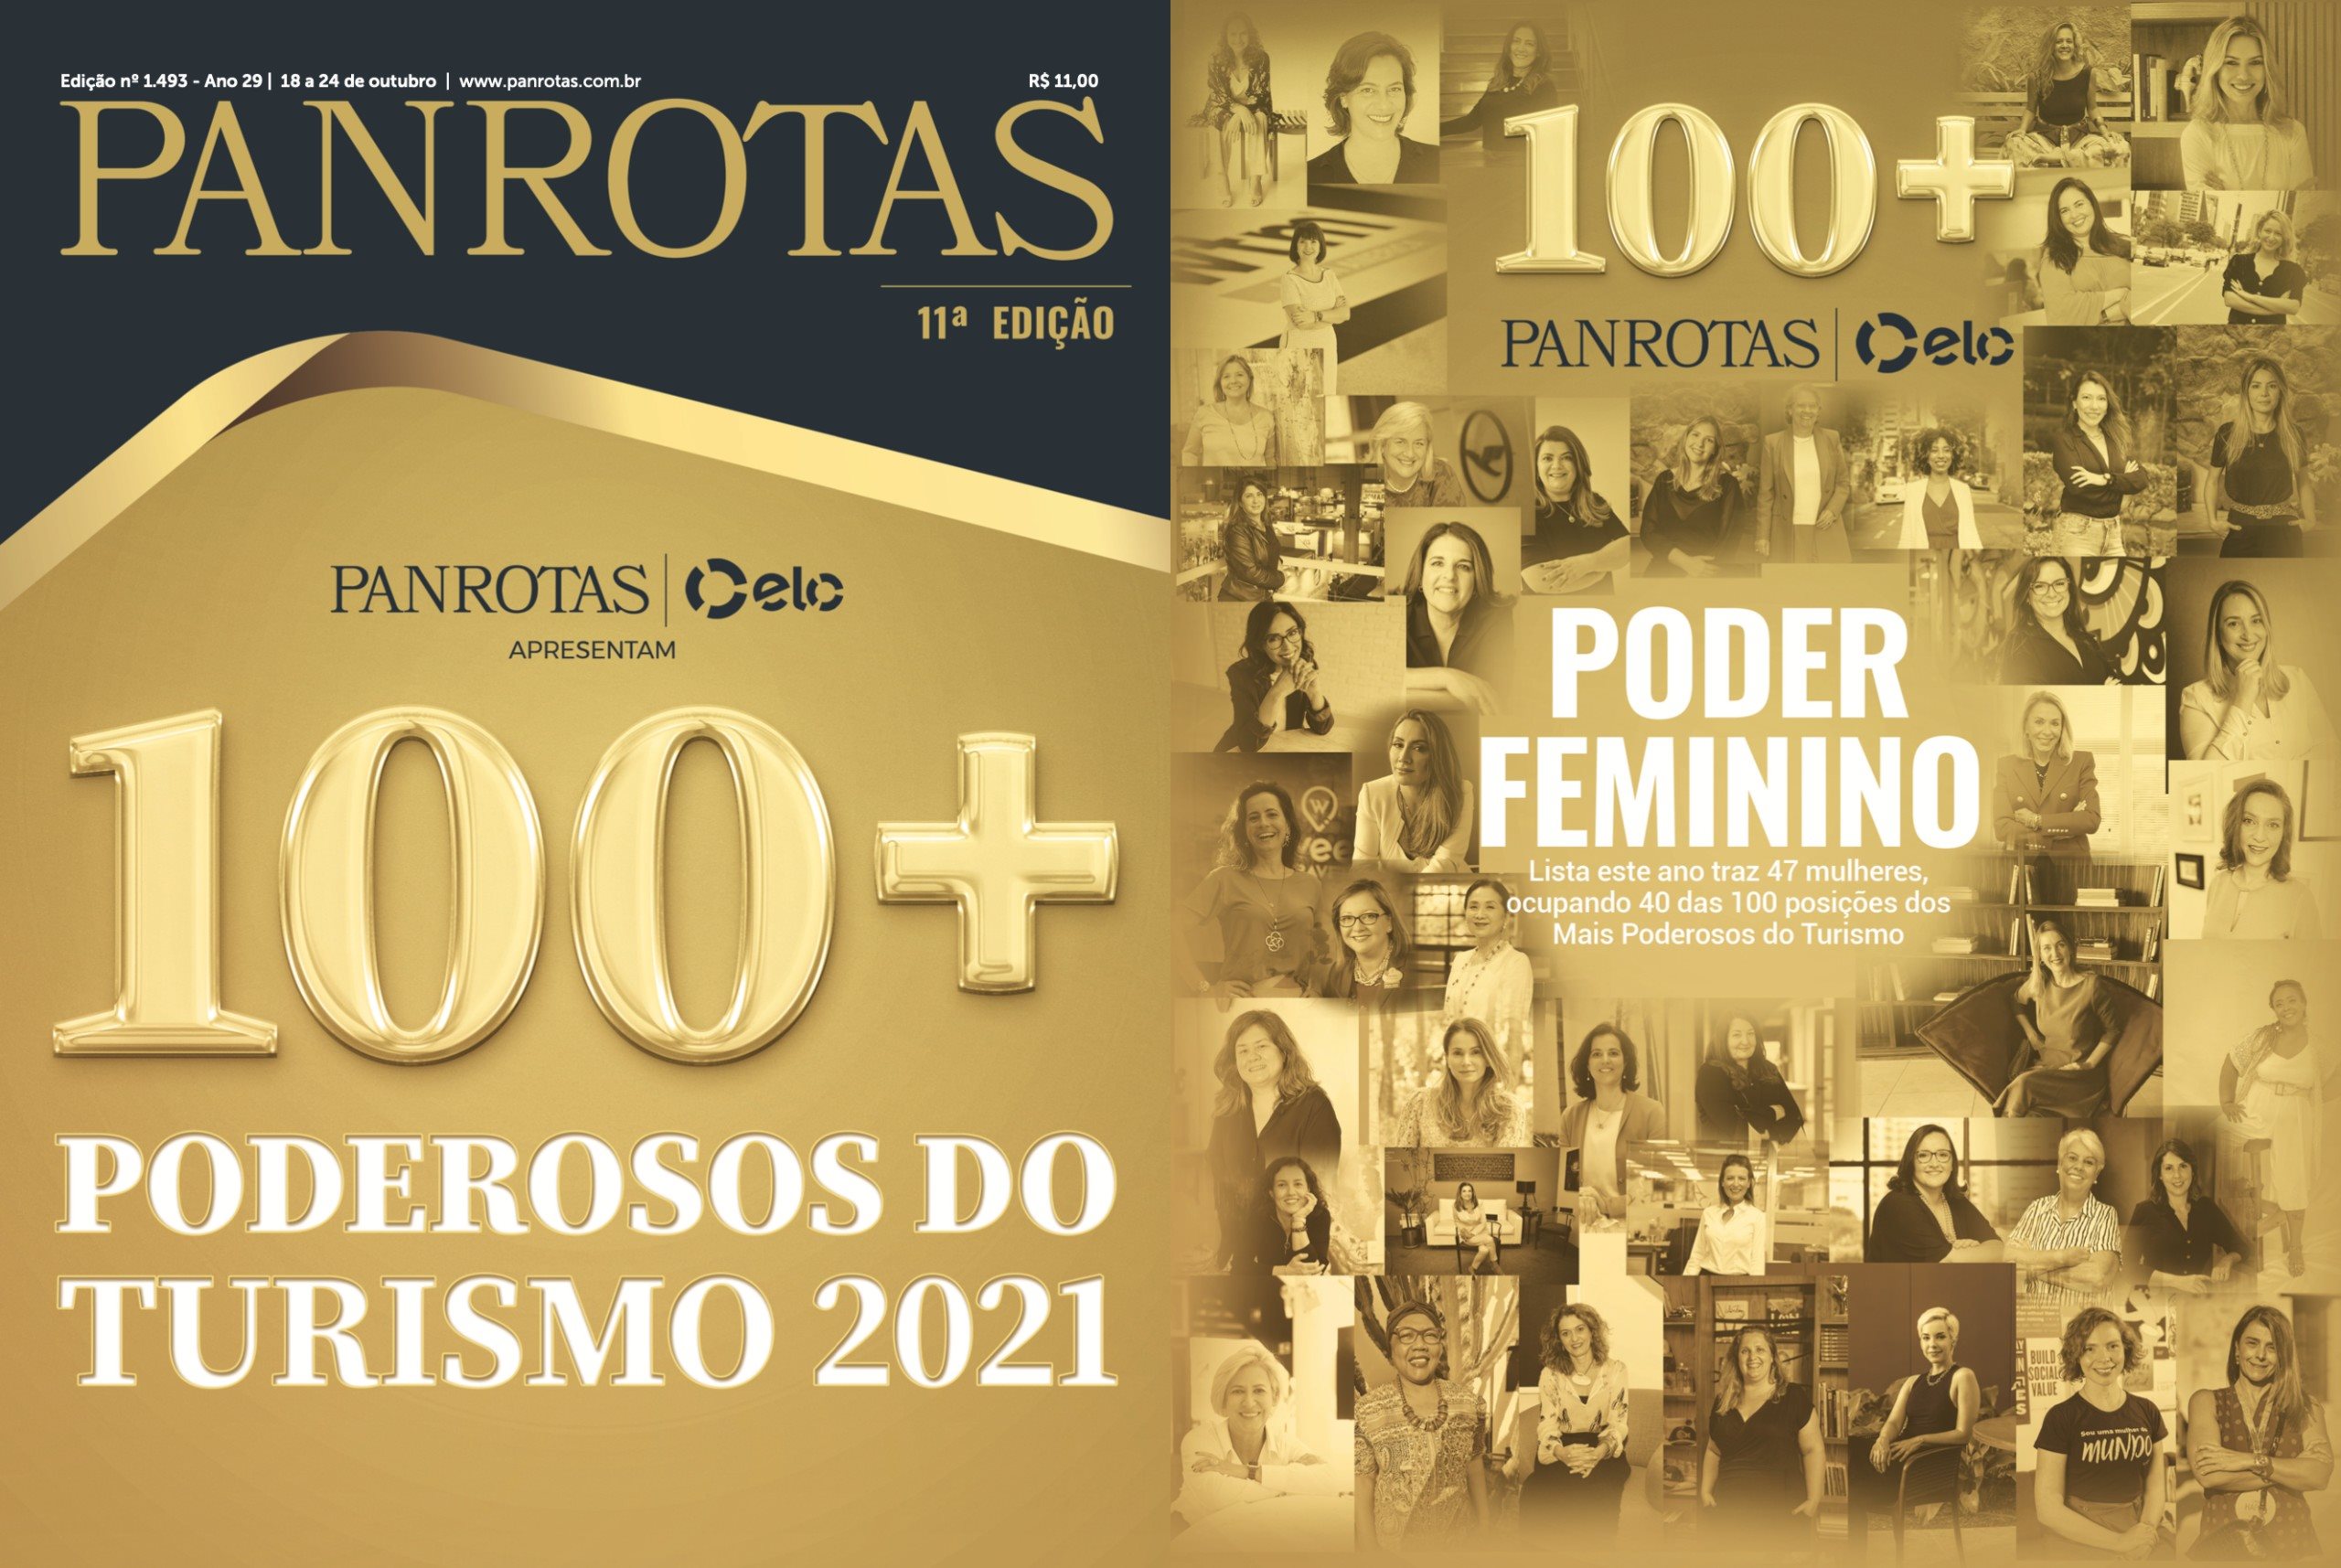 100+ Poderosos do Turismo foi destaque na seção do Portal PANROTAS